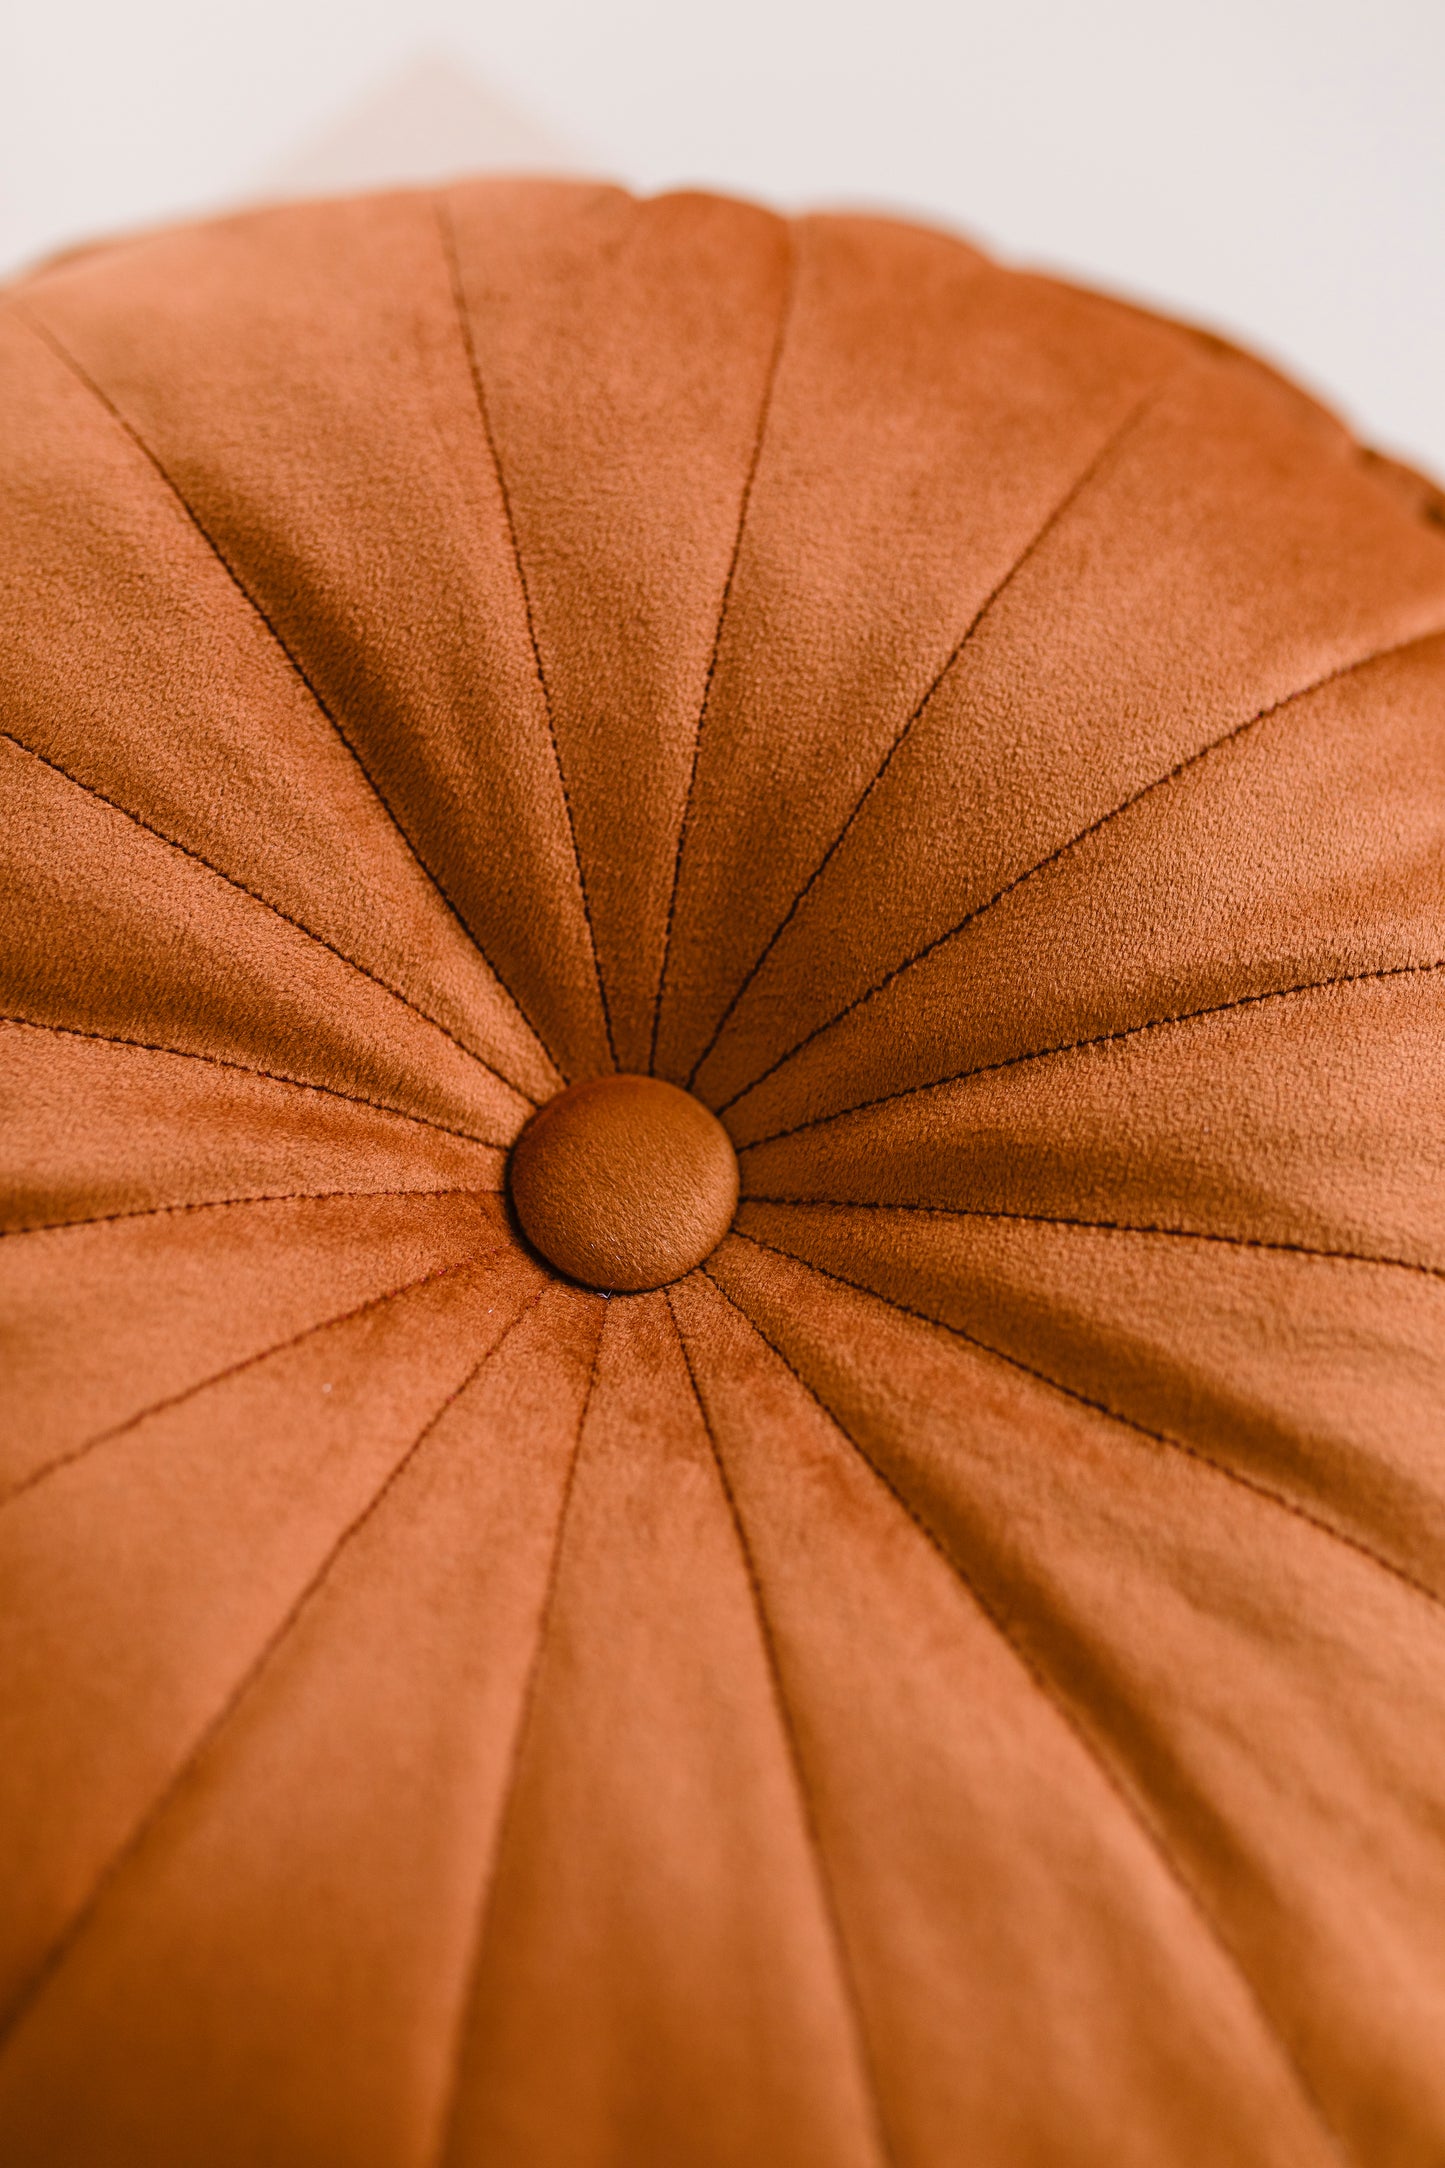 orange cushion close up